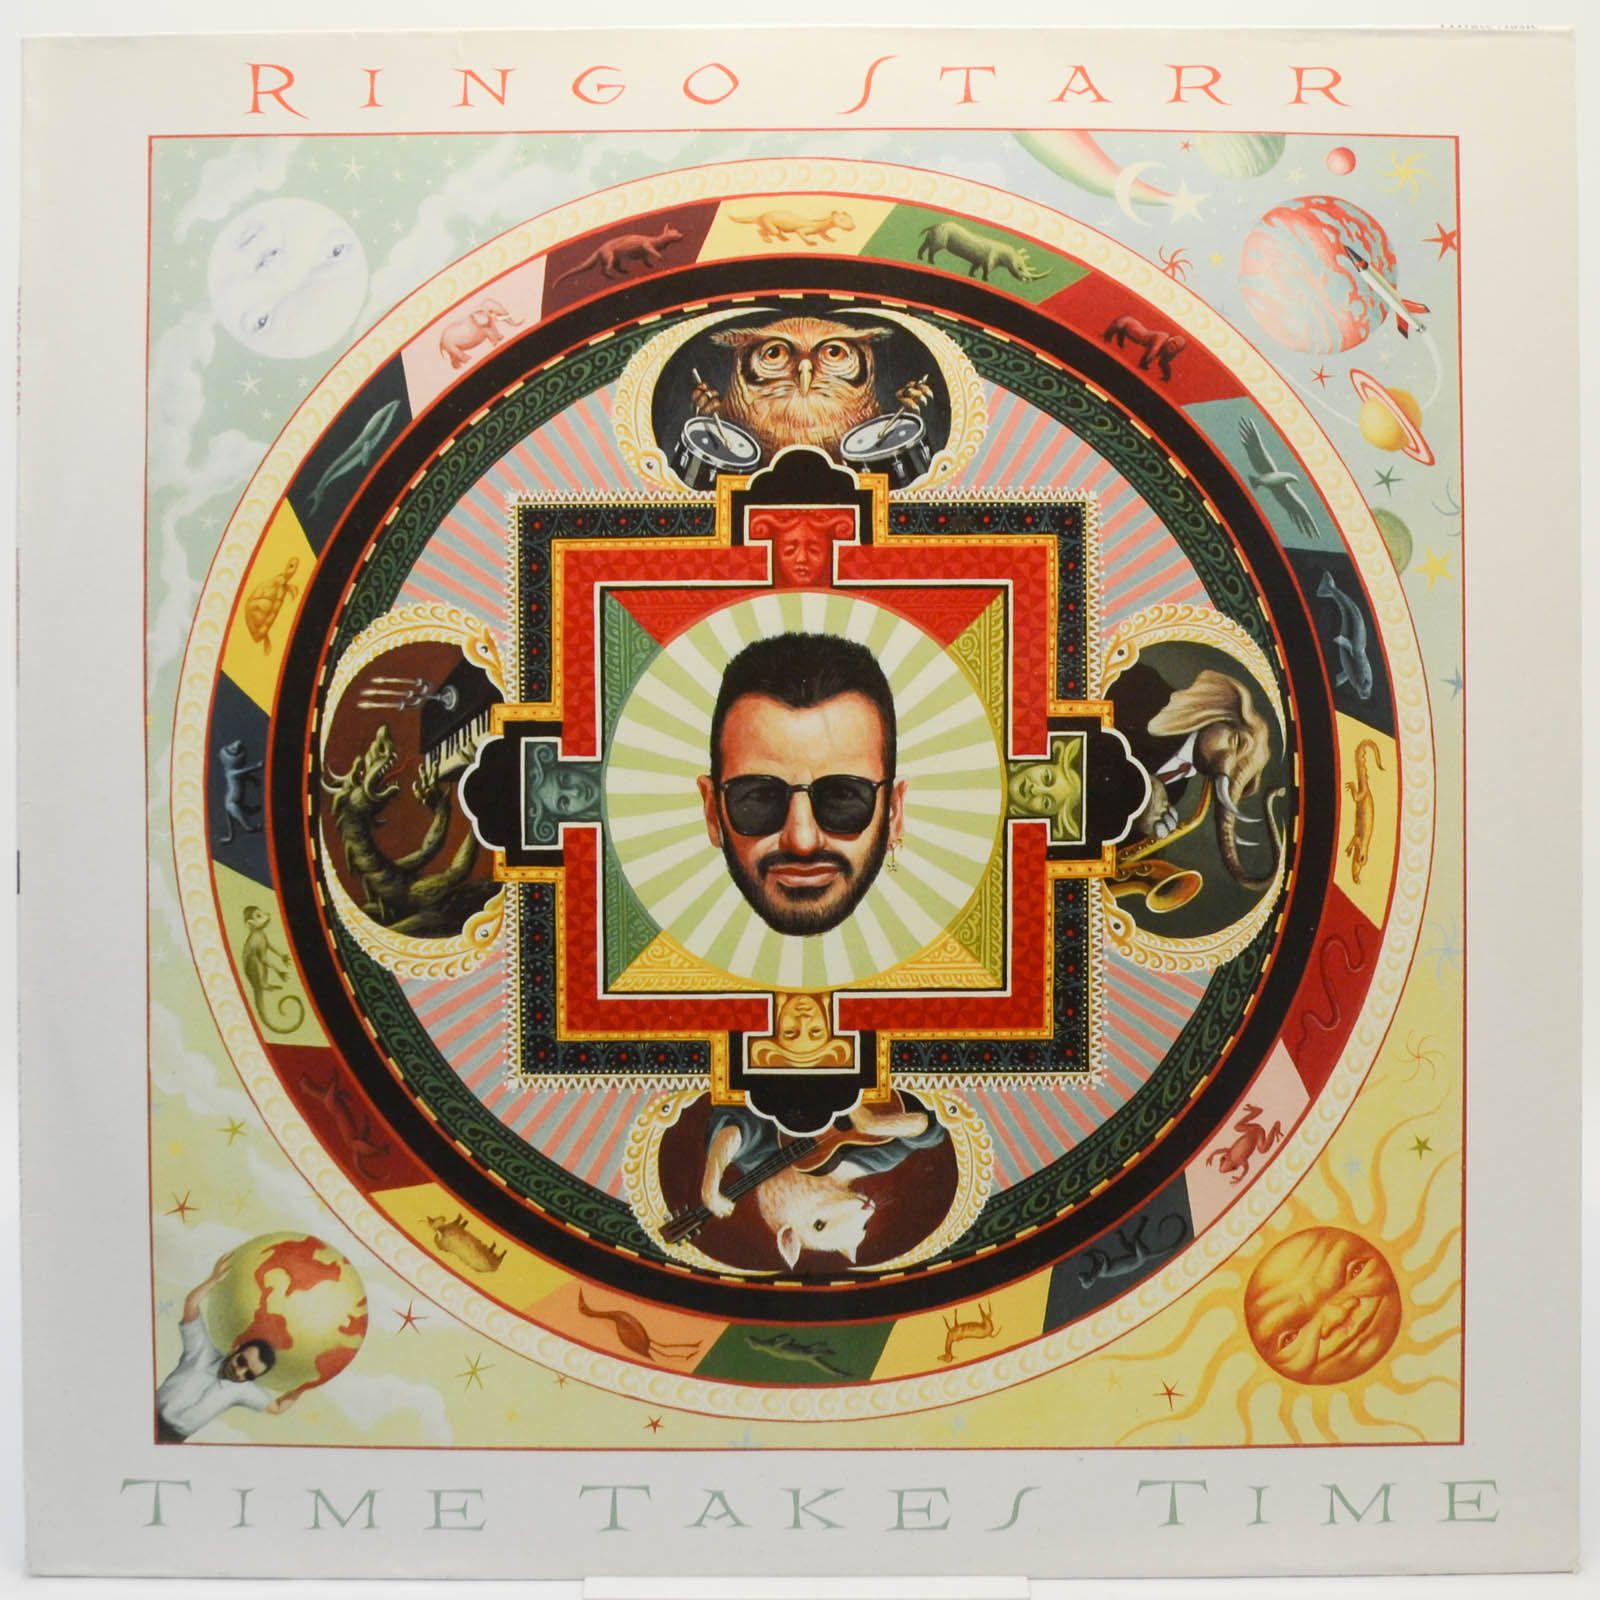 Ringo Starr — Time Takes Time, 1992